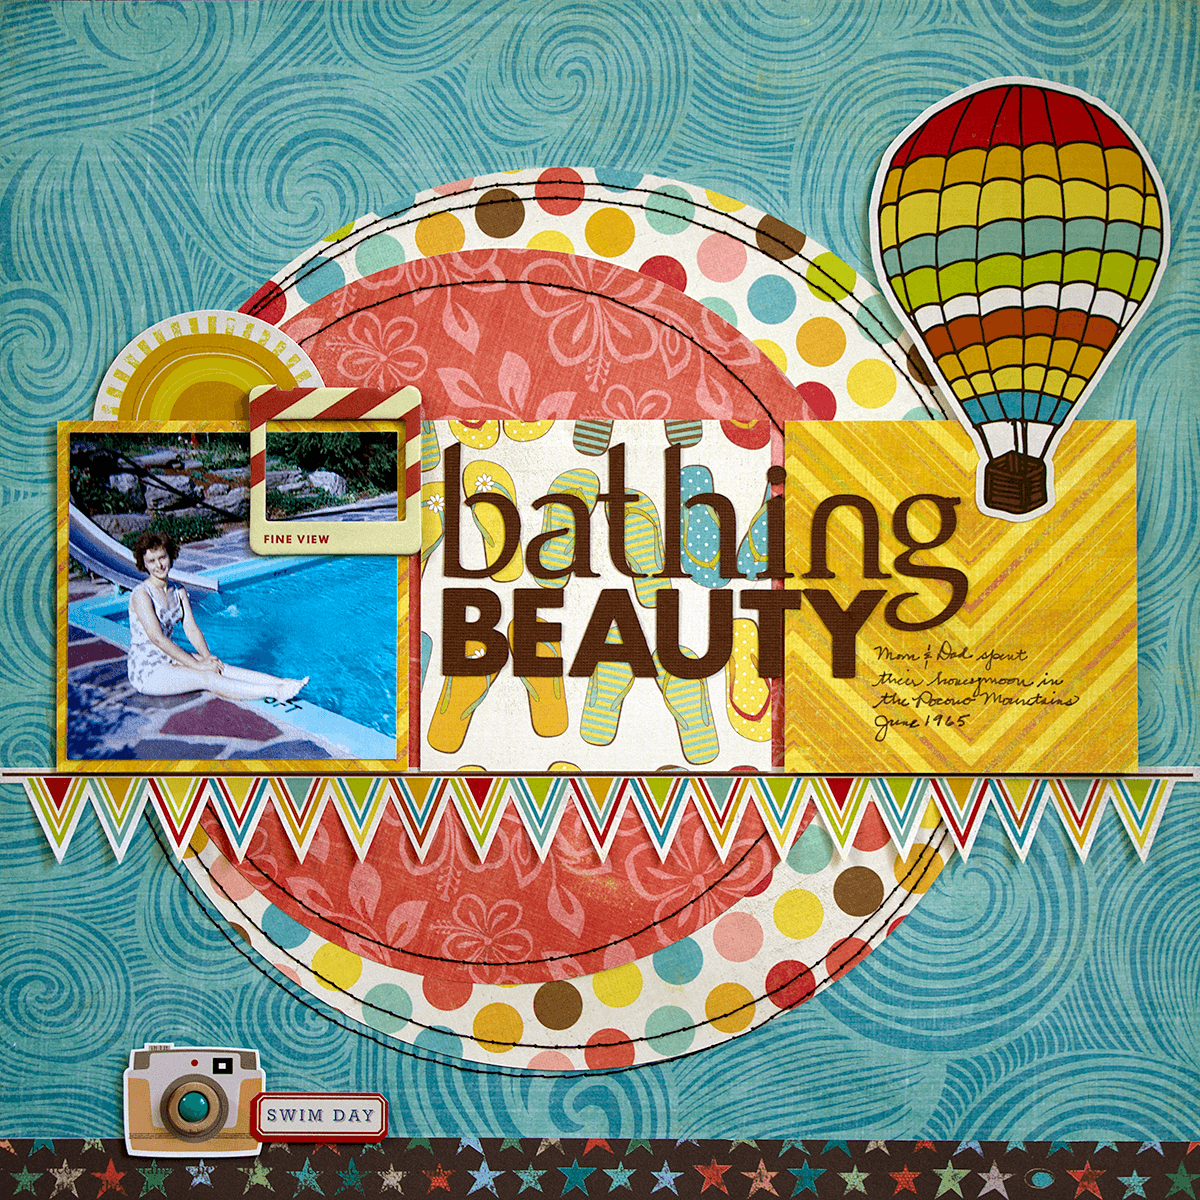 Bathing beauty